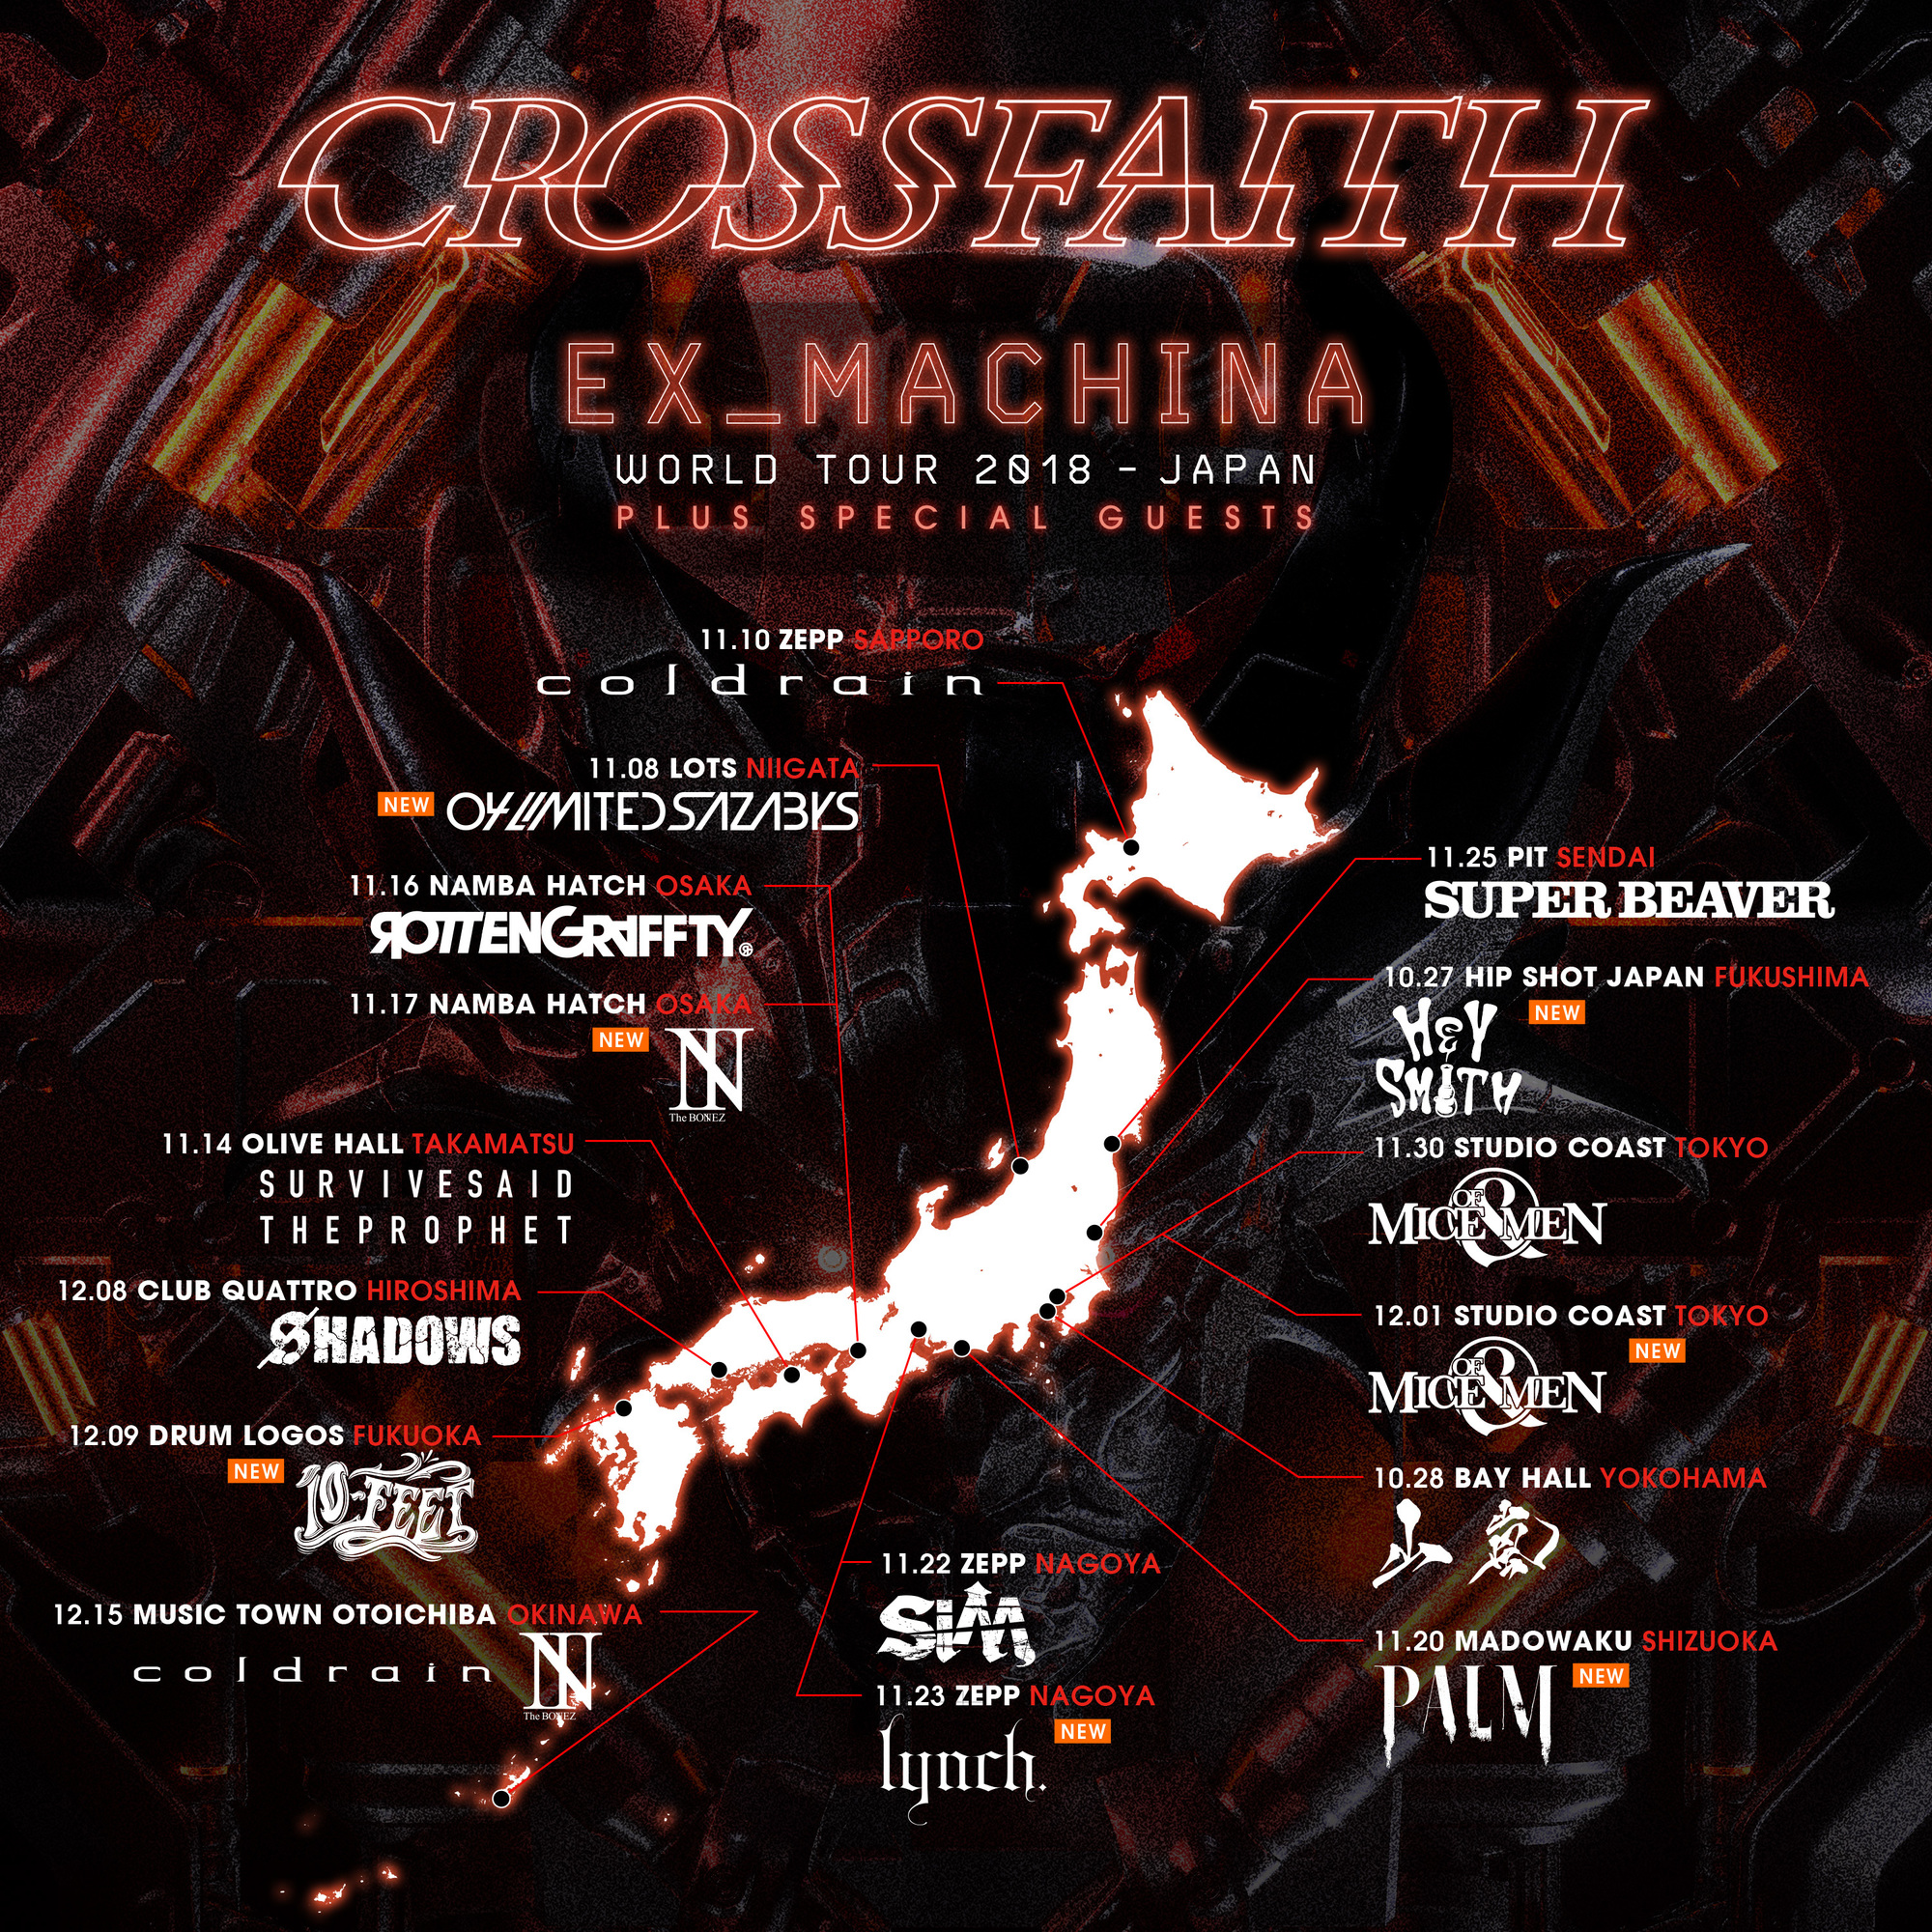 12.9(日)　Crossfaith WORLD TOUR 2018 : JAPAN　福岡DRUM LOGOS